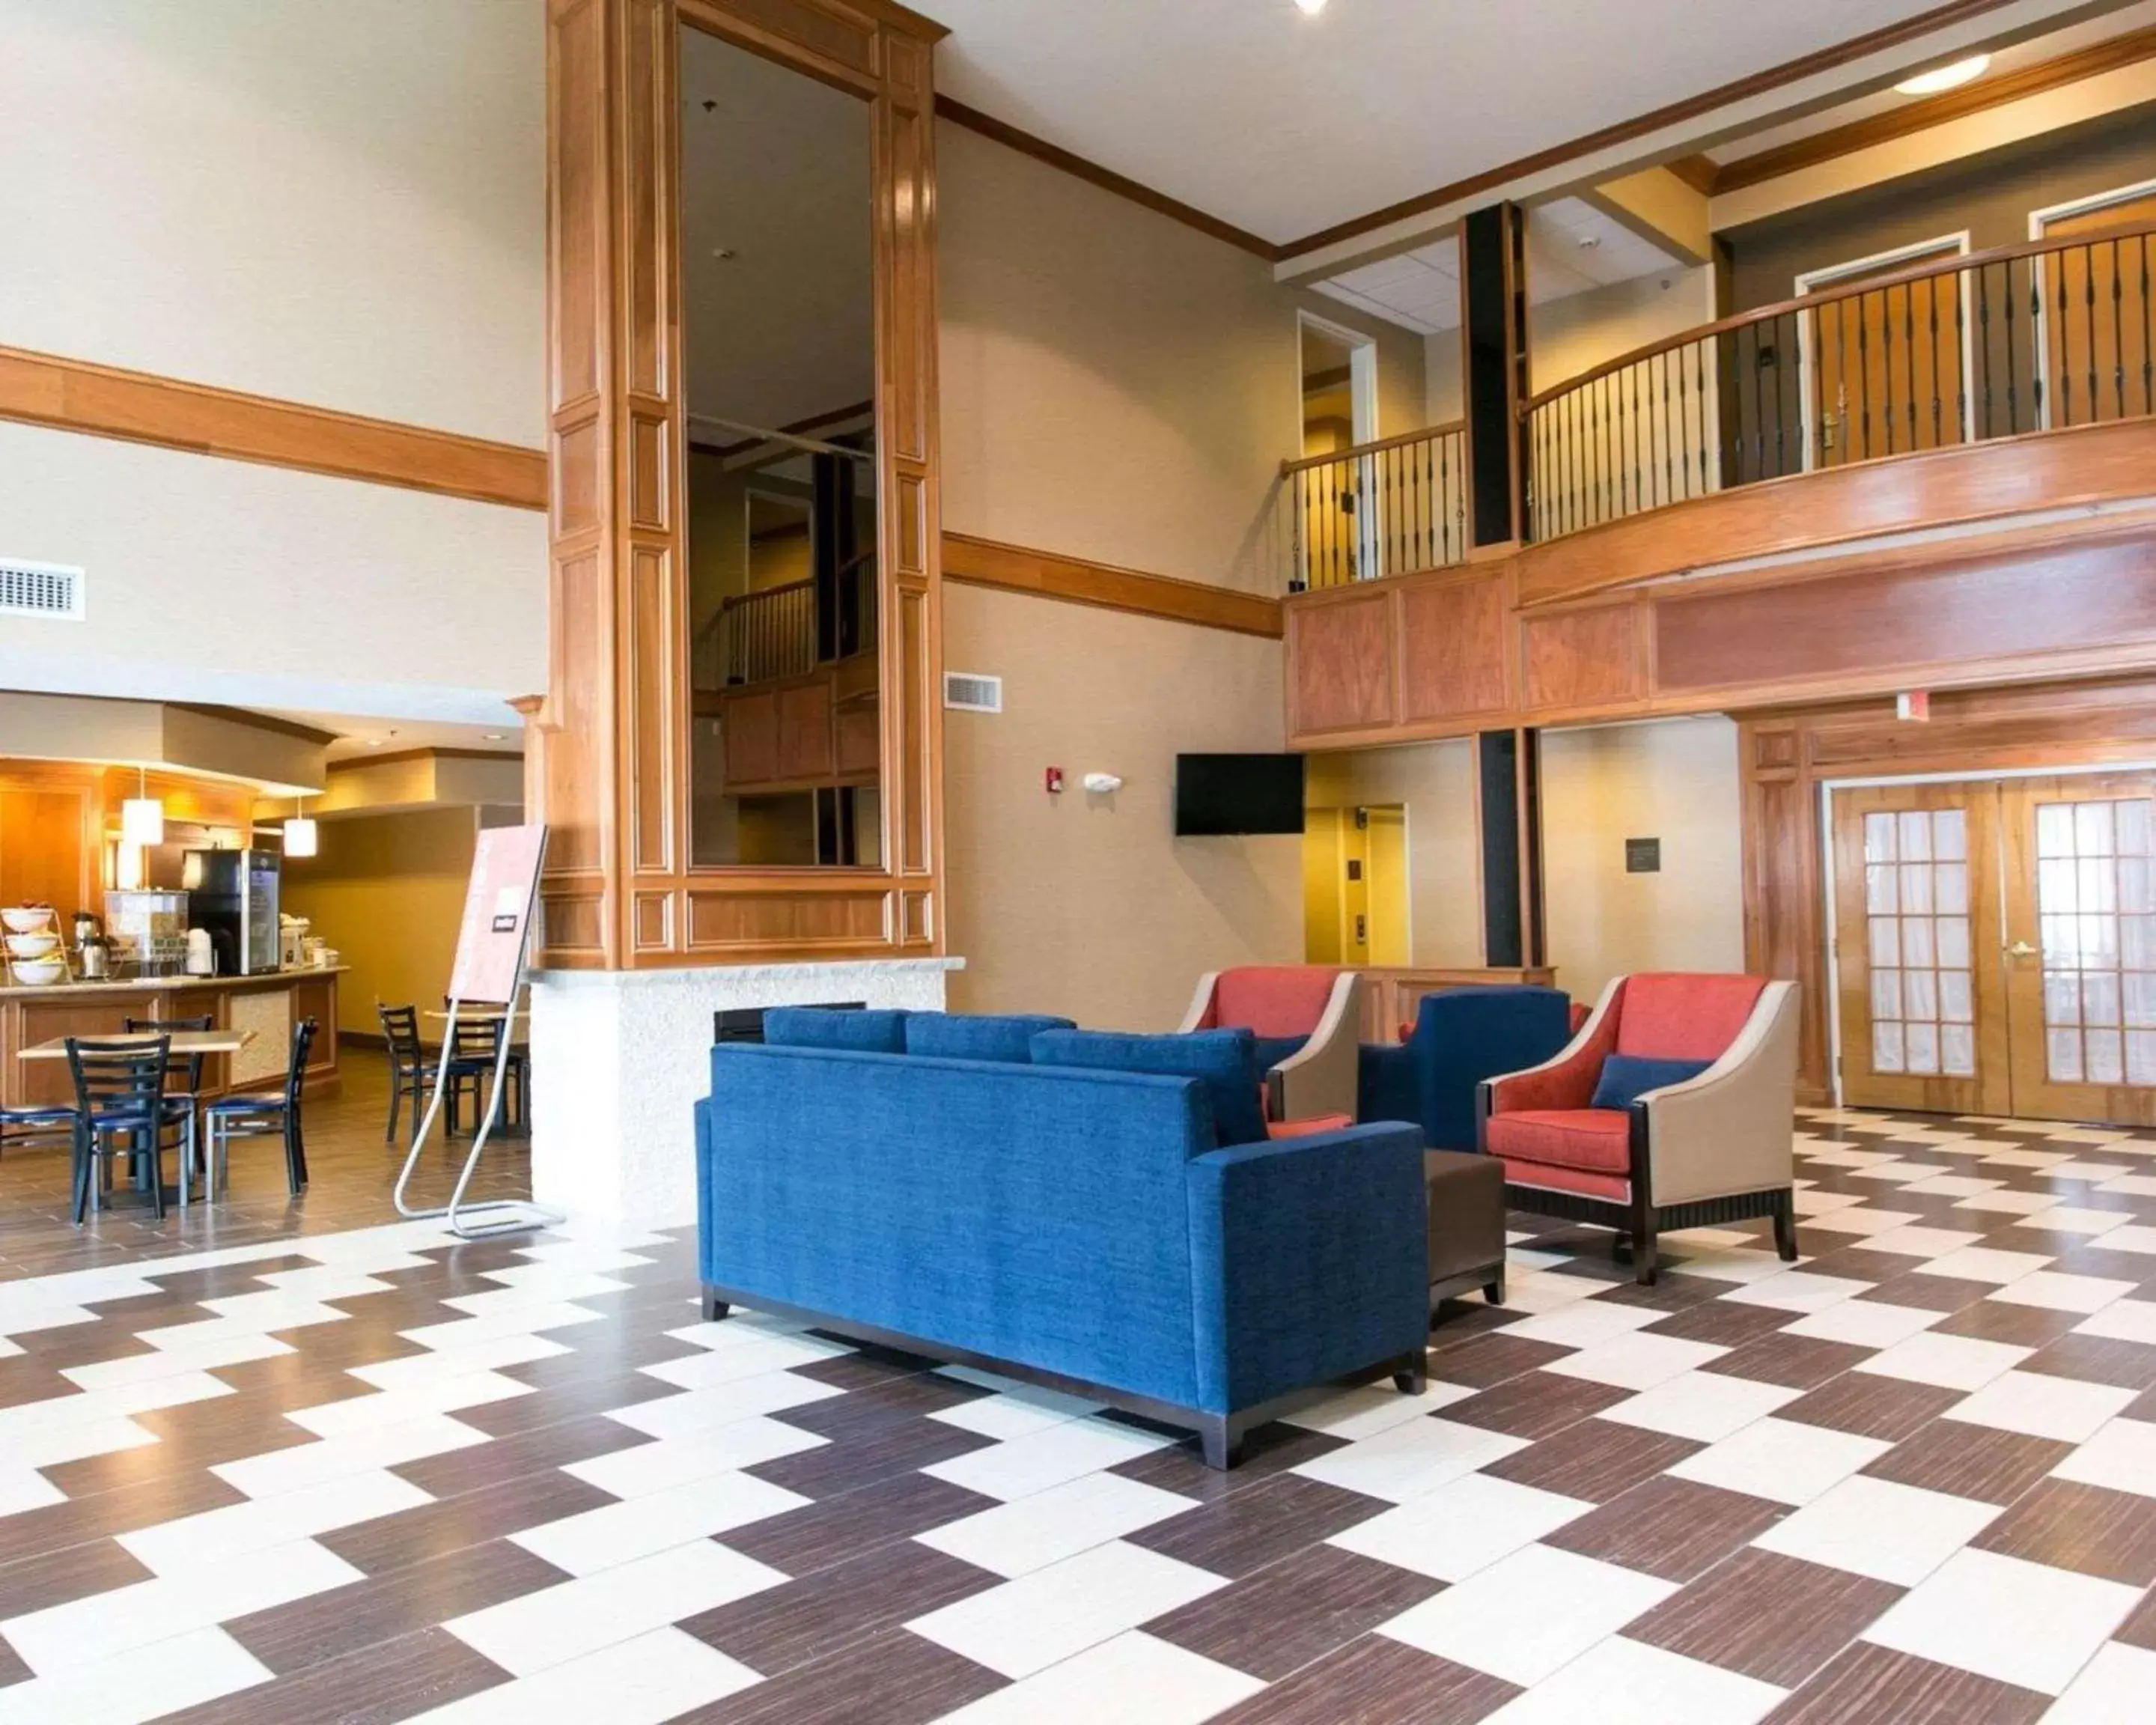 Lobby or reception in Comfort Suites Benton Harbor - St. Joseph